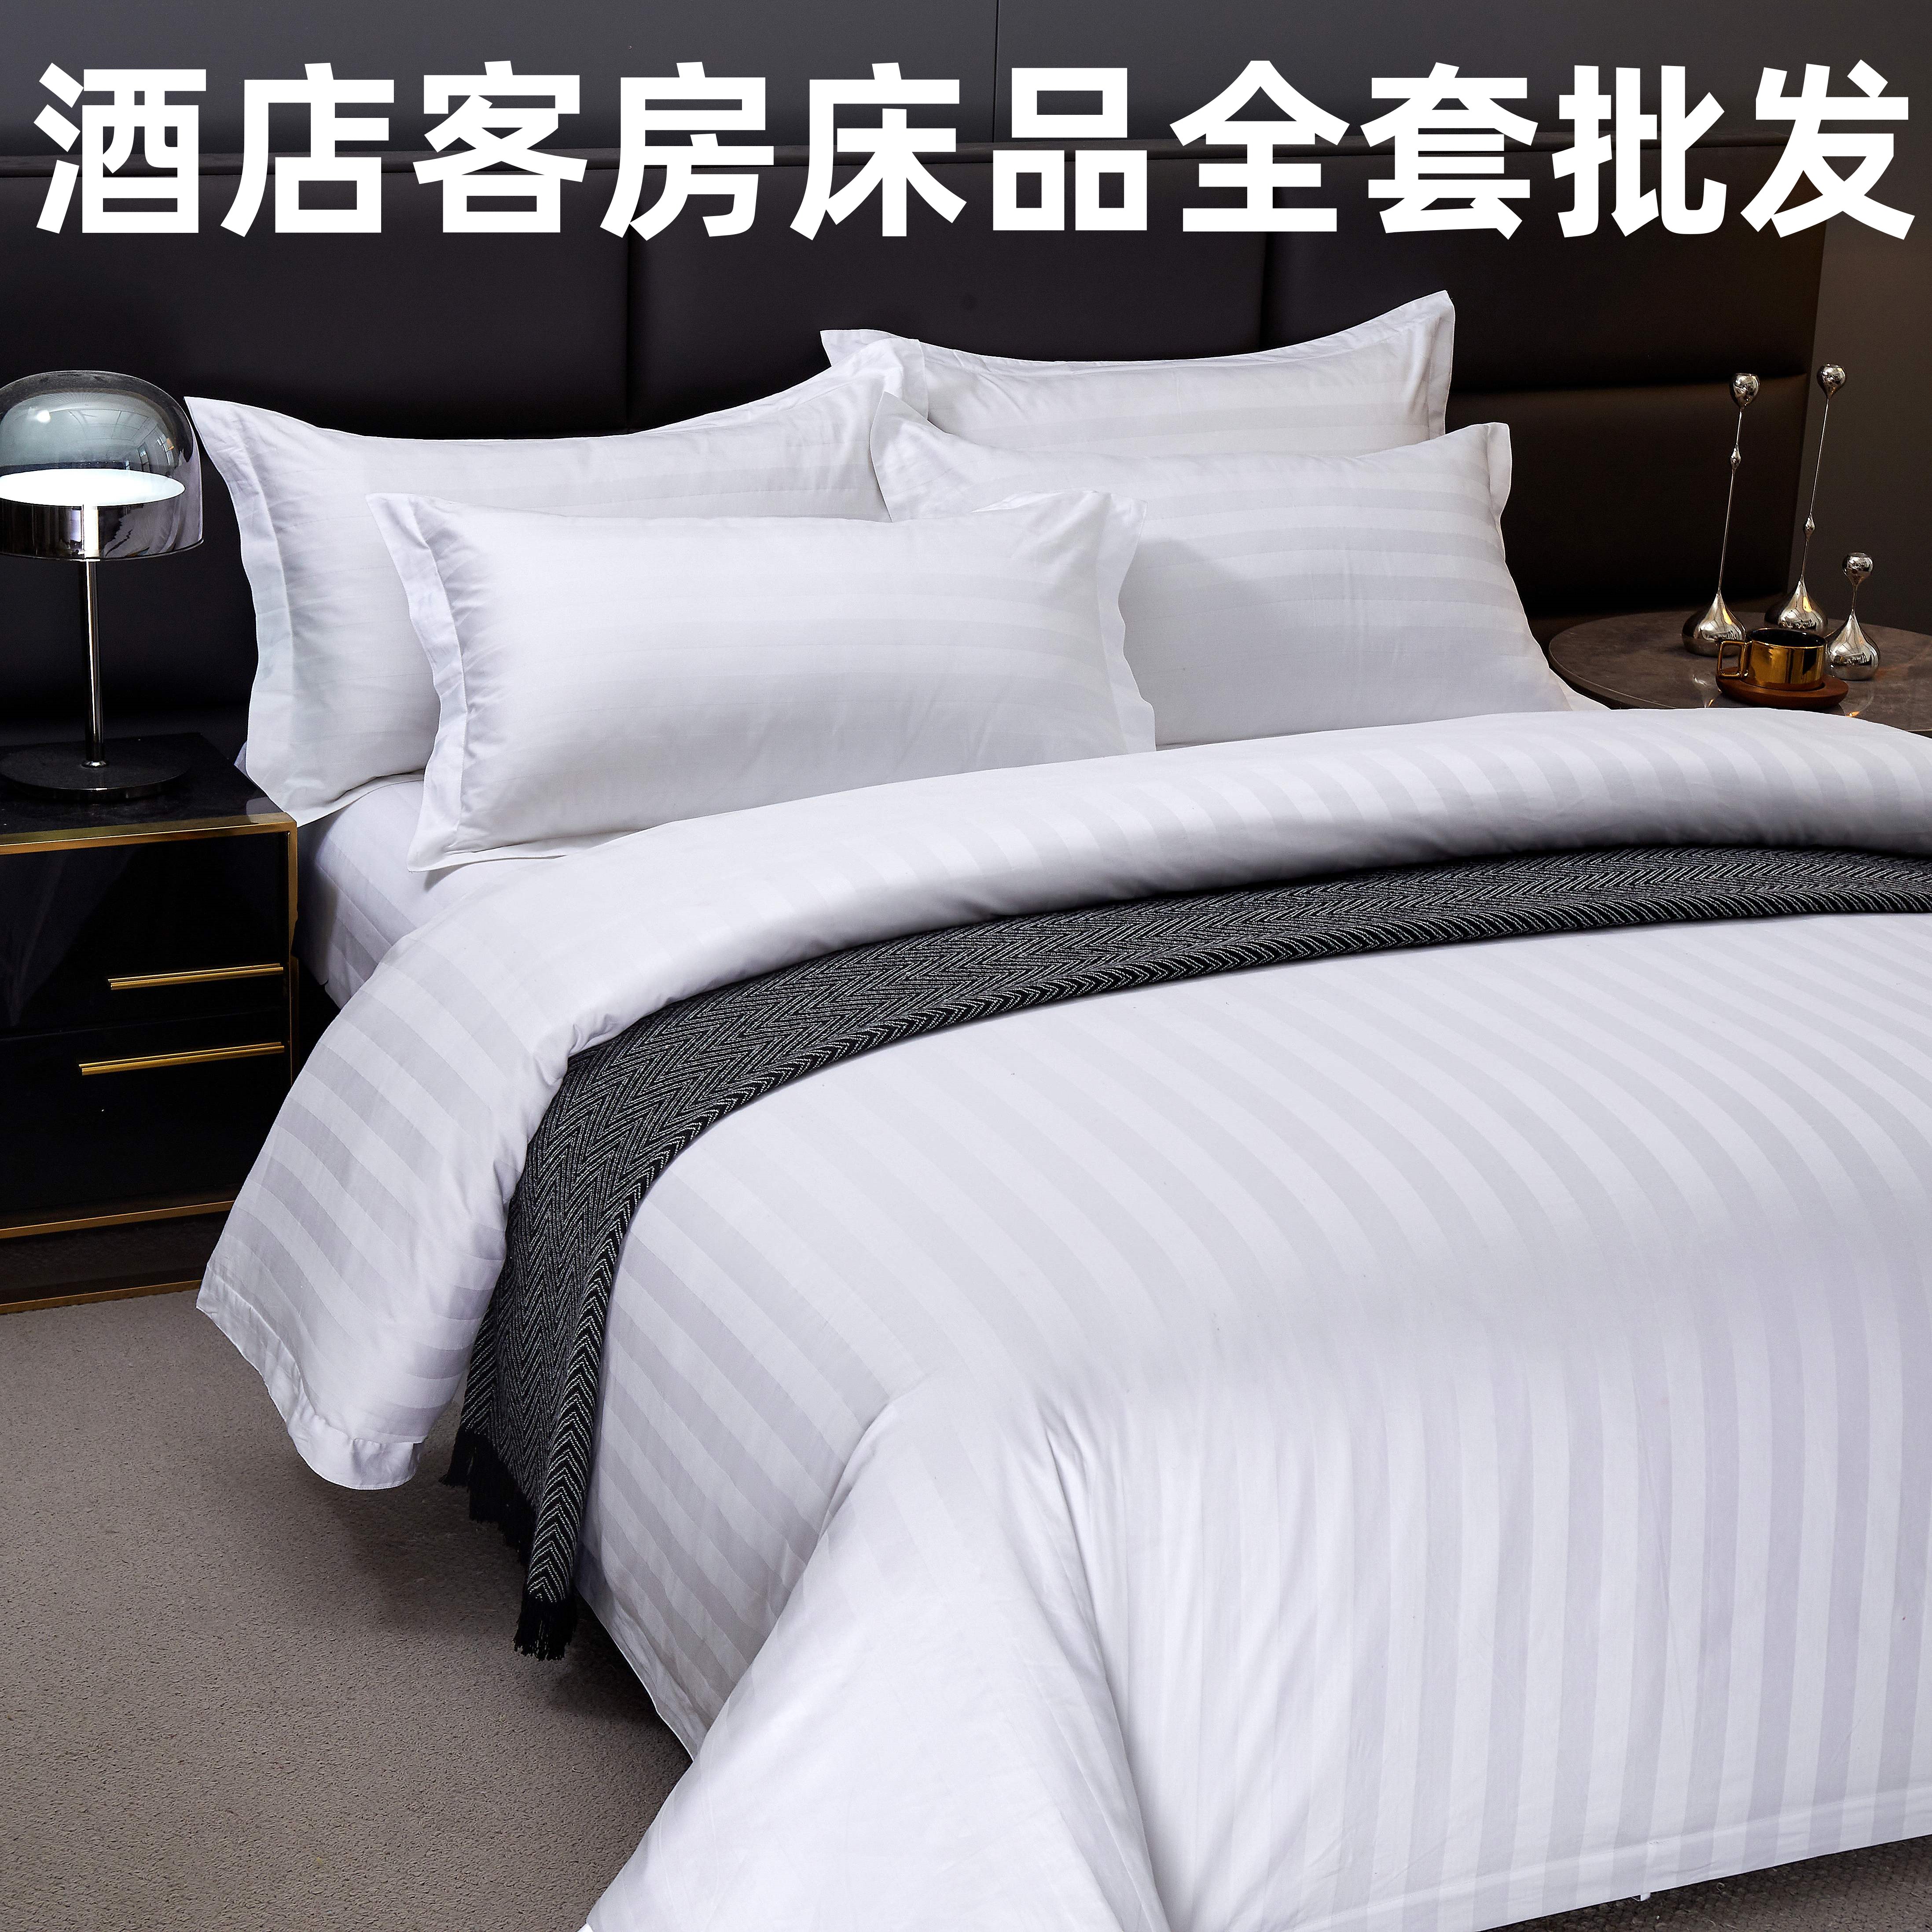 高档酒店客房四件套床上用品七件套民宿宾馆床单被套被子被褥全套